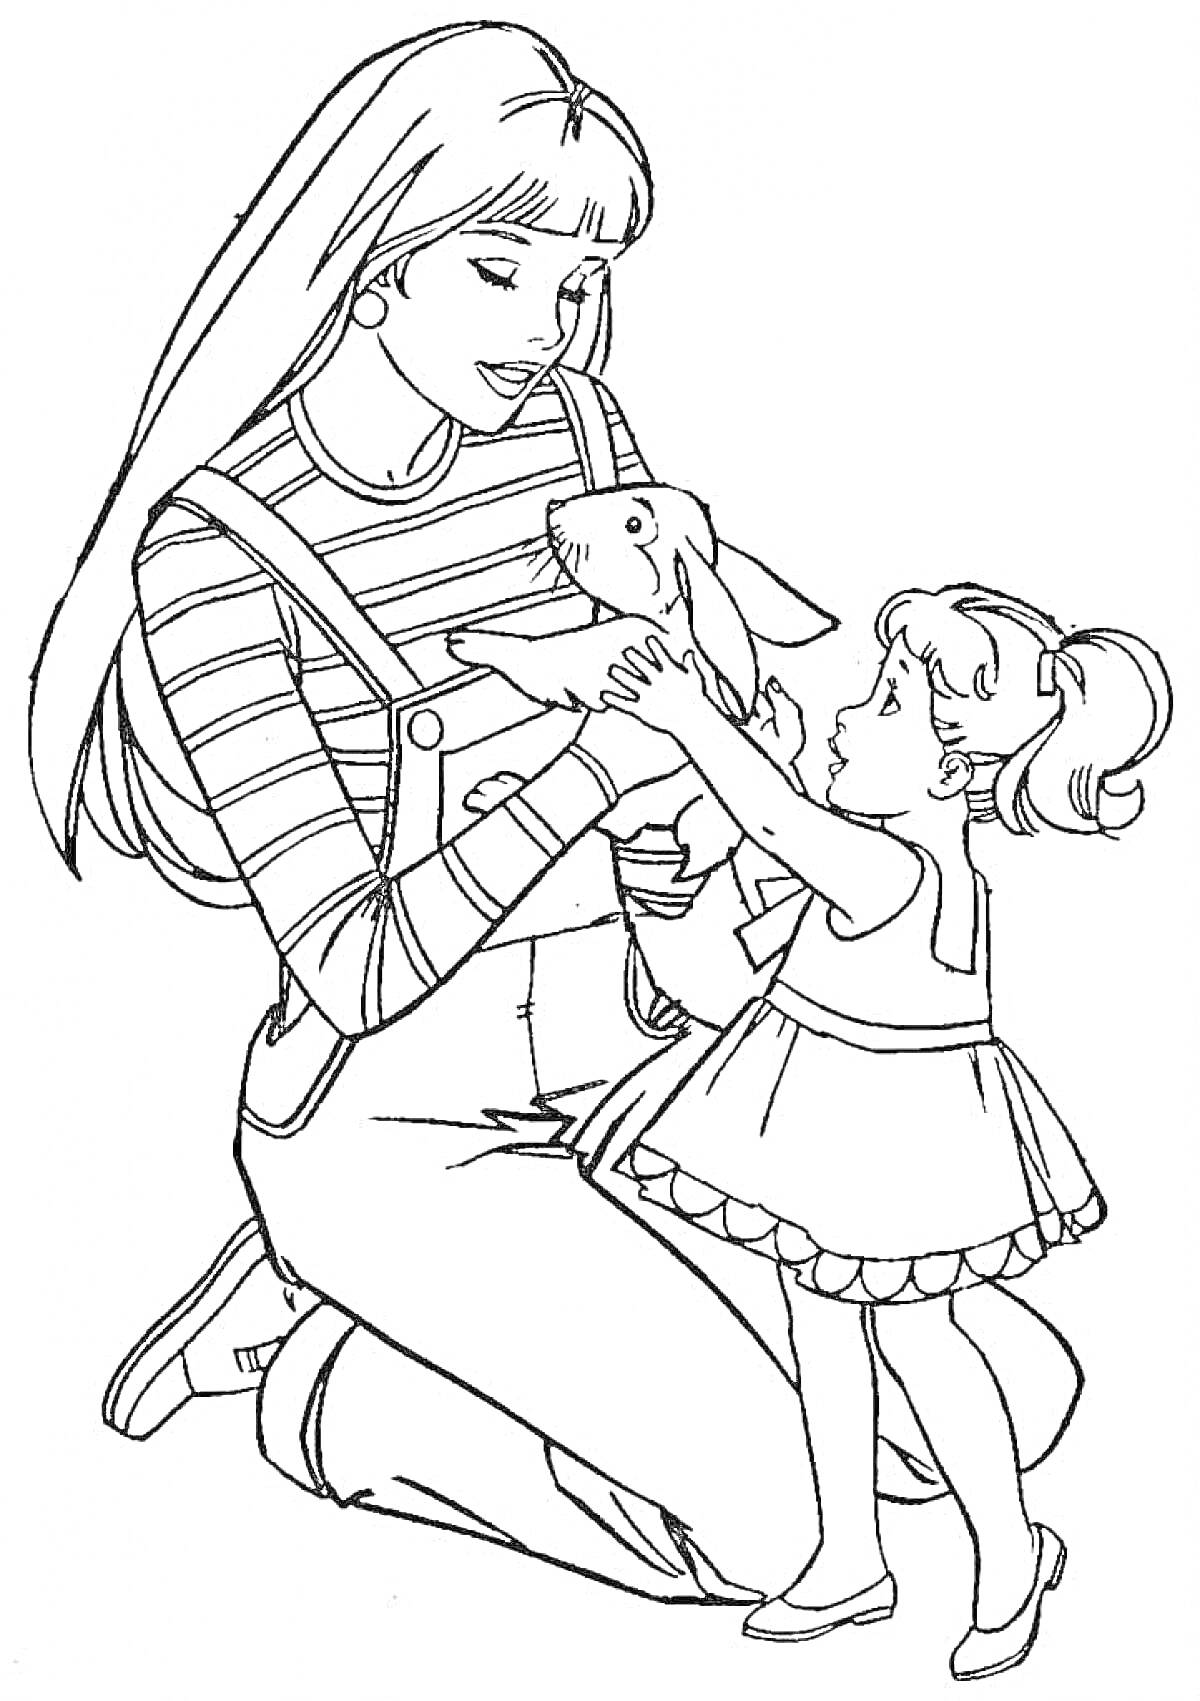 Мама с дочкой держат кролика. Мама в комбинезоне и полосатой футболке, дочка в платье и с хвостиками